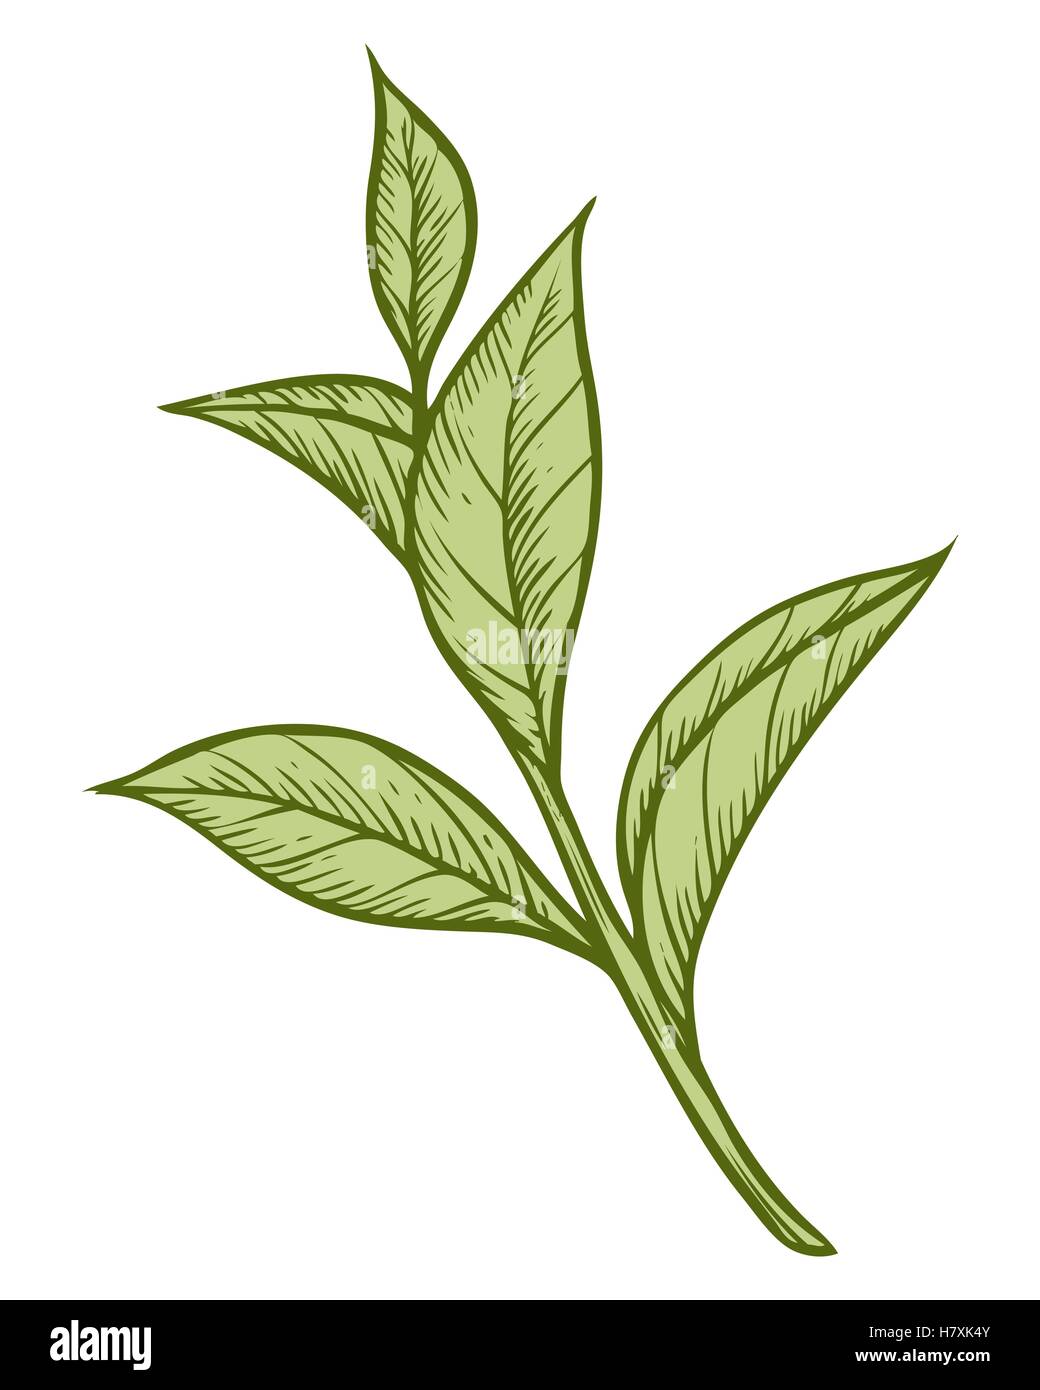 Grüner Tee-Pflanze, Blatt. Handgezeichnete Skizze Vektor-Illustration.  Floral Zweig Bio Lineart. Chinesischer Tee, heißes Getränk. Grünes Blatt  Stock-Vektorgrafik - Alamy